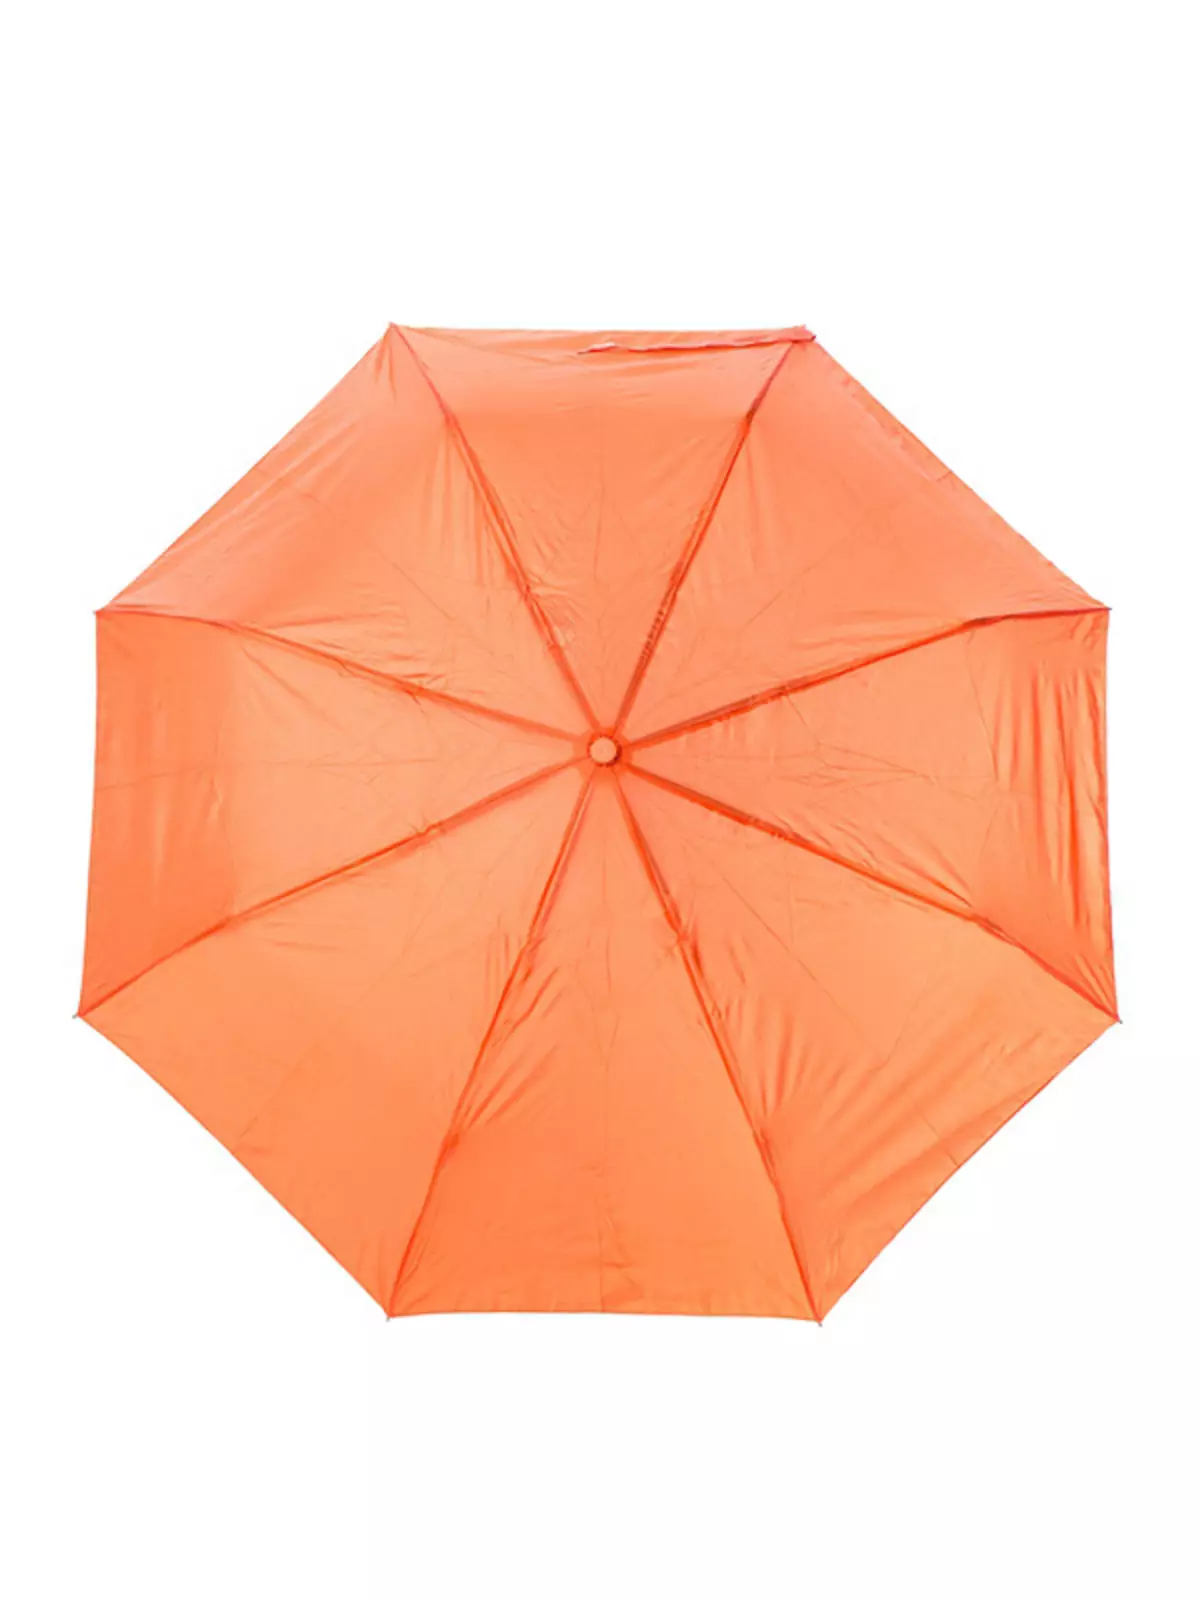 Malamalama umbrellas (74 ata): Tamaitai faataitaiga 15234_23